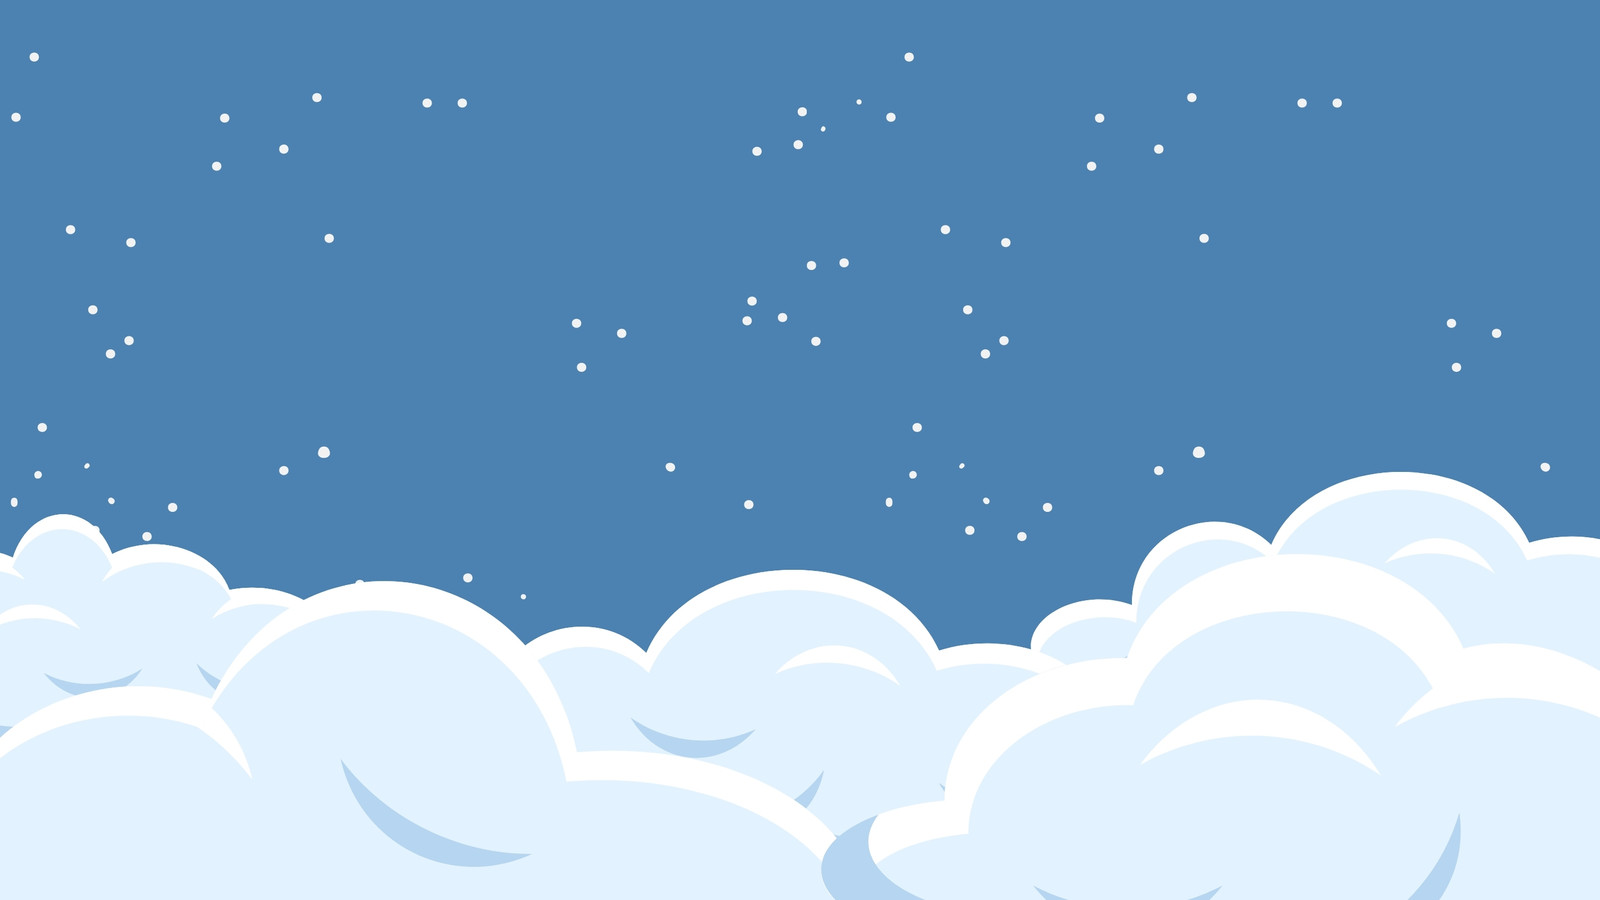 Hãy trang trí nền Zoom của bạn với mẫu đám mây miễn phí và tùy chỉnh được, tạo ra không gian làm việc hoàn hảo để tập trung vào công việc hoặc học tập. Chọn mẫu đám mây yêu thích của bạn và tùy chỉnh theo sở thích của mình để tạo ra không gian làm việc riêng biệt.